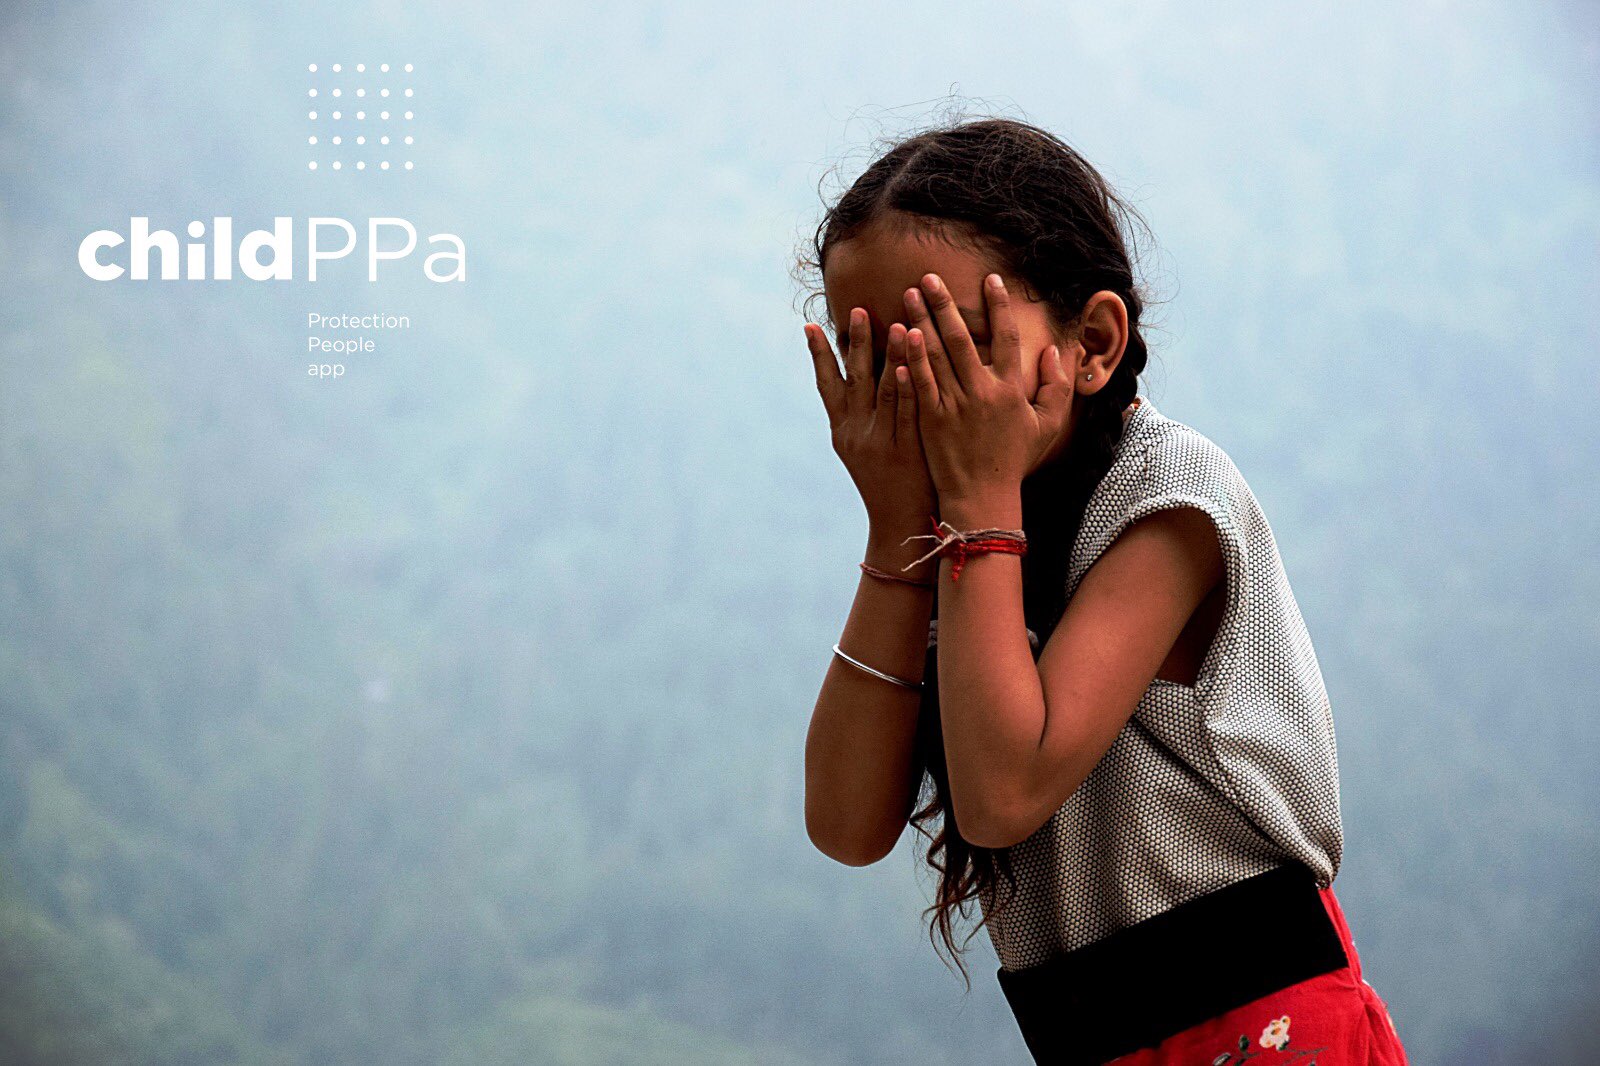 Niña india, pequeña, de unos 7 años con trenzas y con las dos manos tapándose la cara. Lleva varias pulseras en las muñecas y está en una zona rural muy frondosa en una montaña de la India. En un lateral de la imagen de lee: CHILD PPA: Protection People App